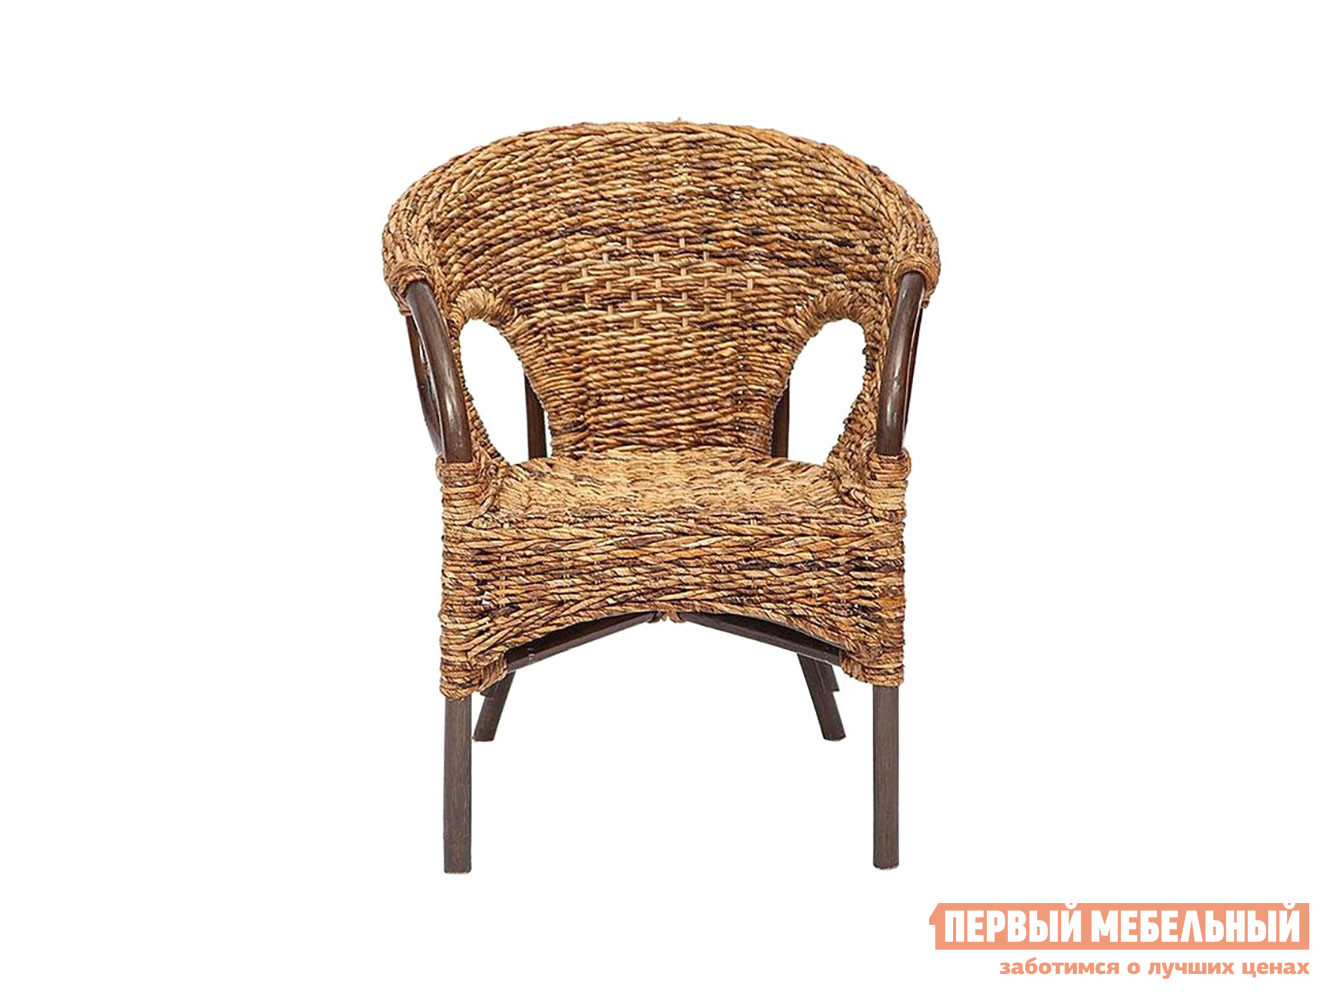 Комплект плетеной мебели  Мандалино 1 Грецкий орех / Банановые листья от Первый Мебельный